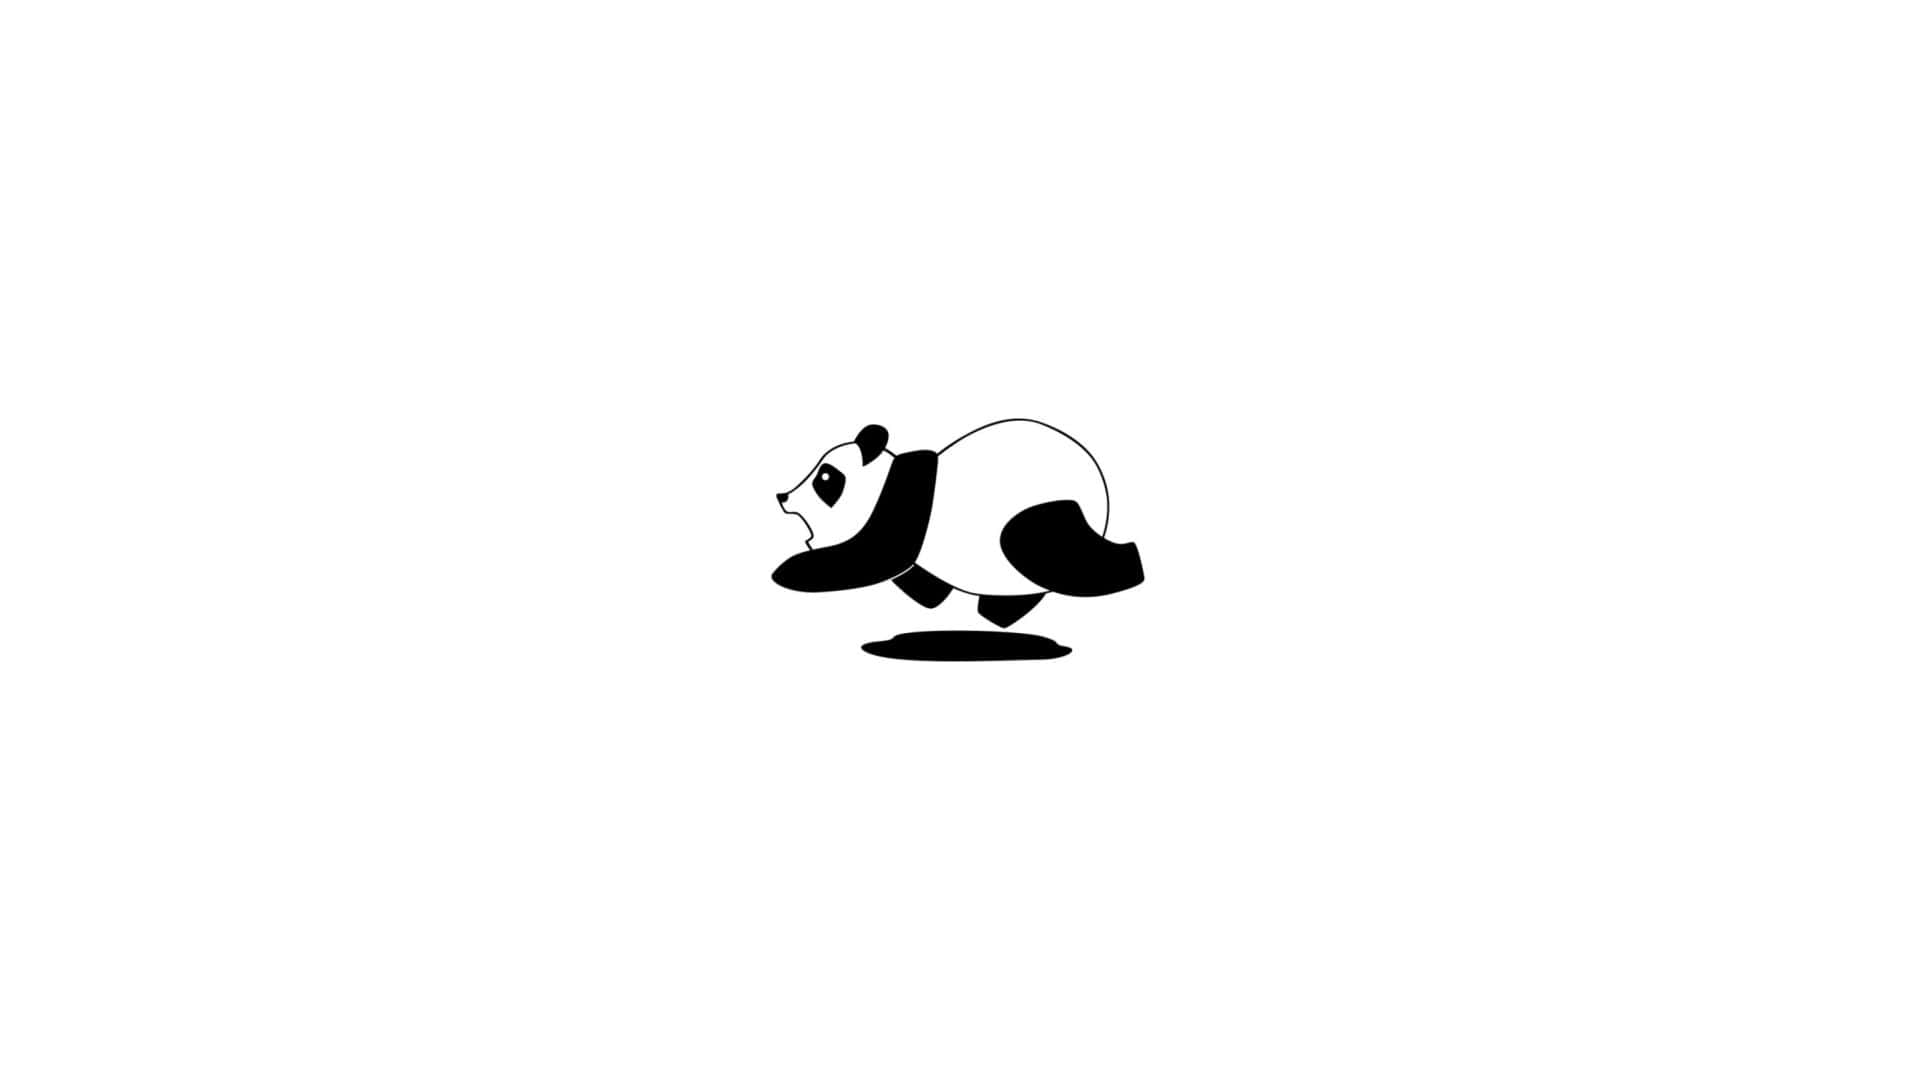 Umlogotipo De Urso Panda Em Um Fundo Branco. Papel de Parede